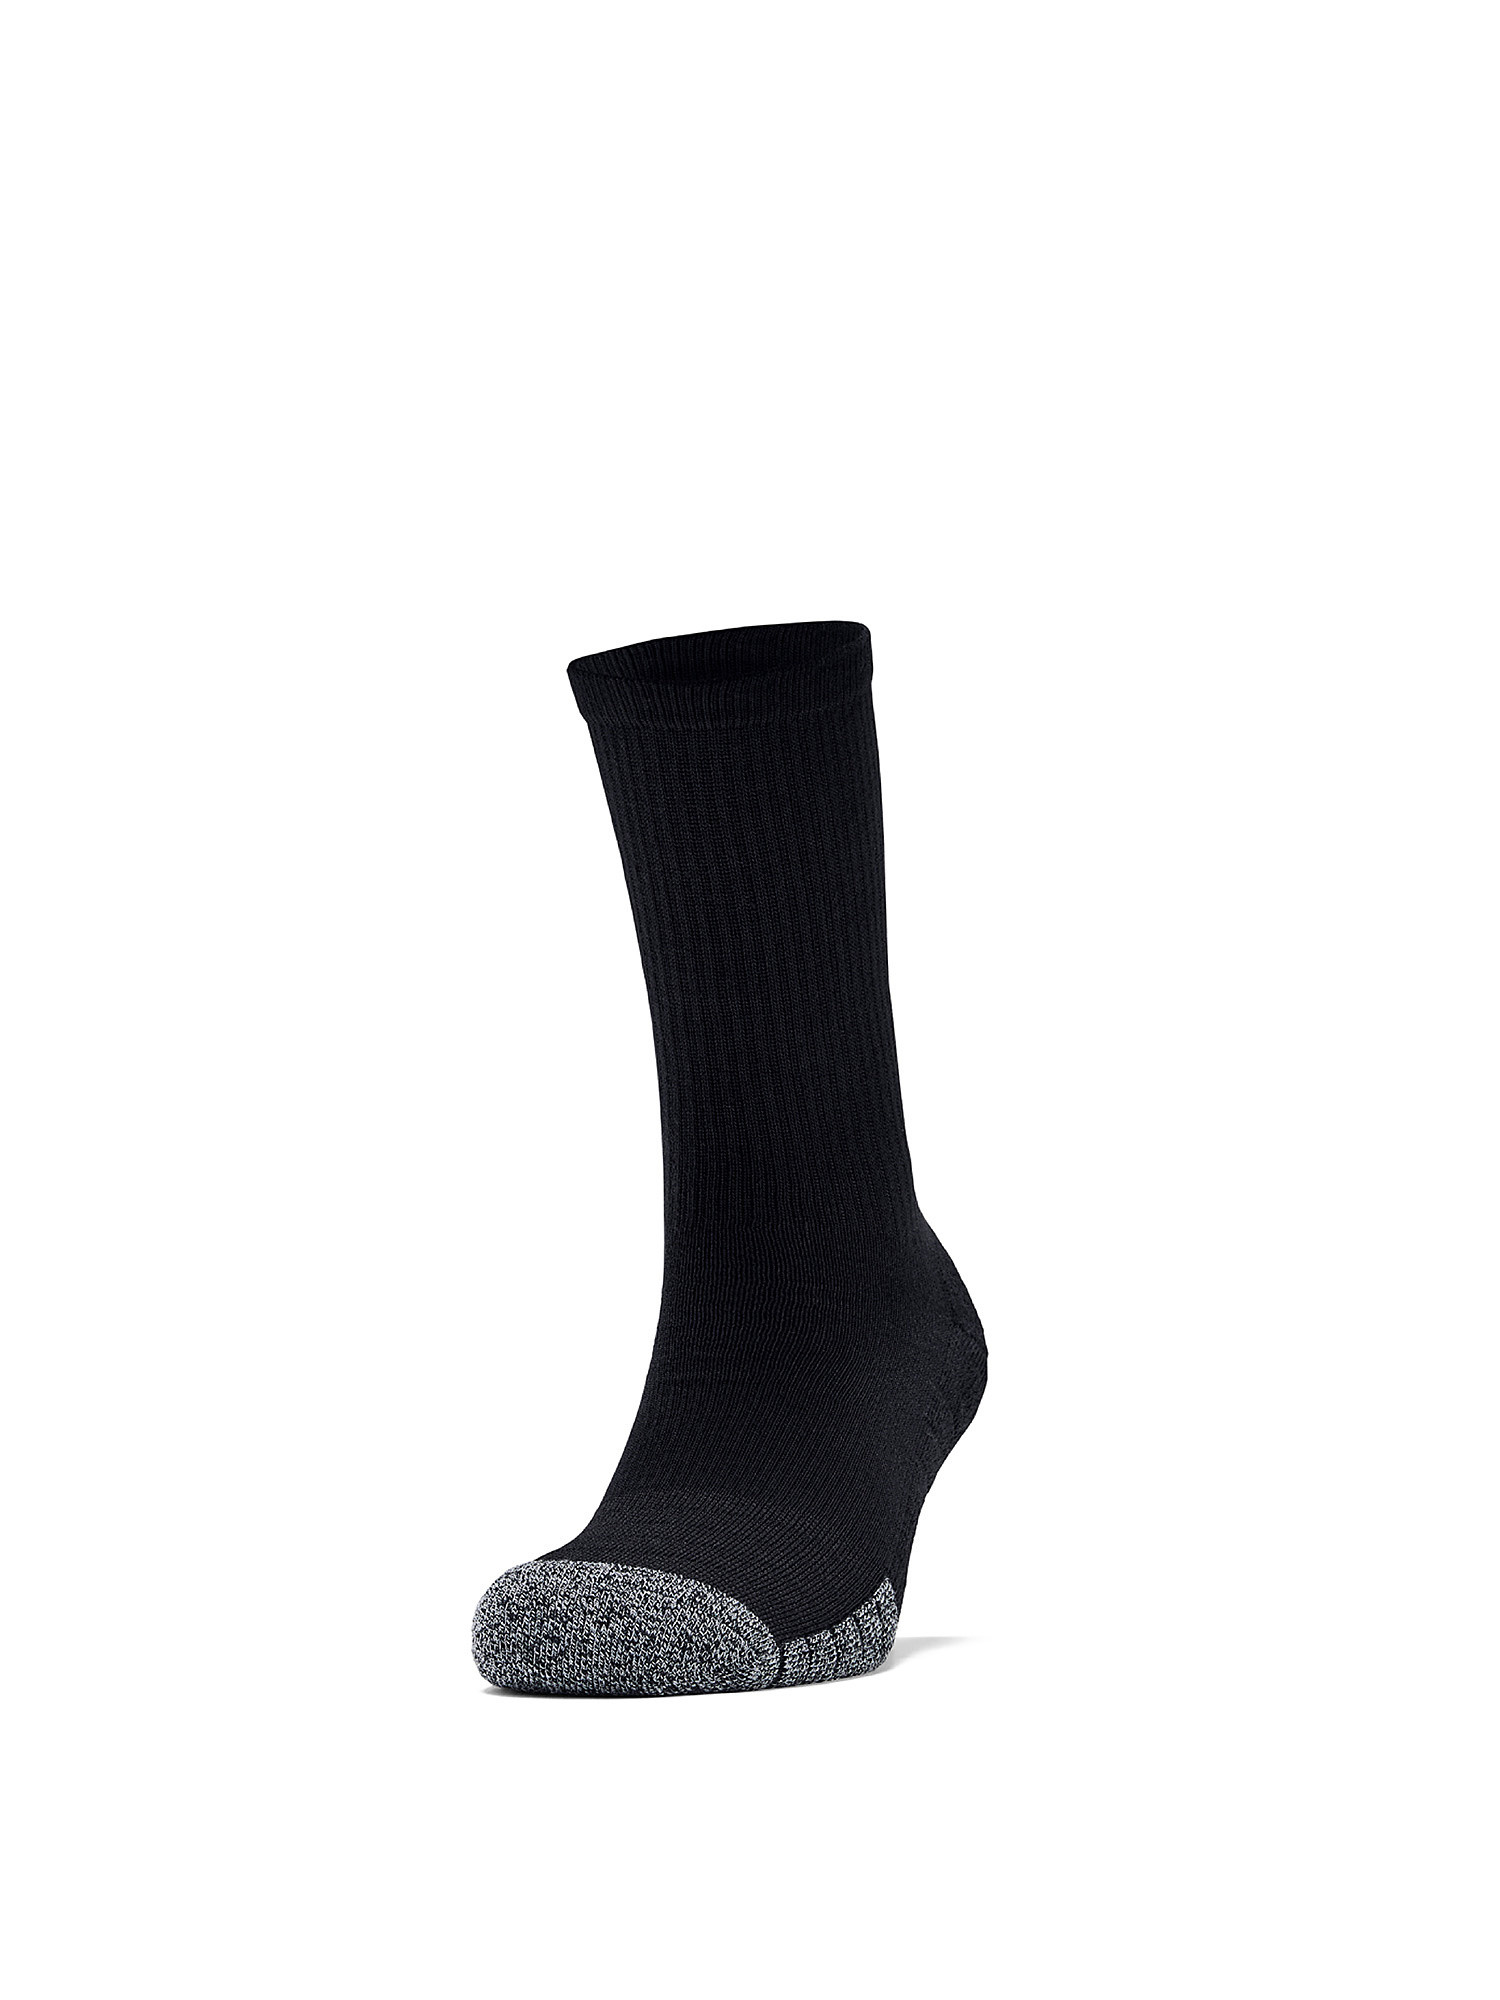 Under Armour - HeatGear® Crew socks, Black, large image number 1